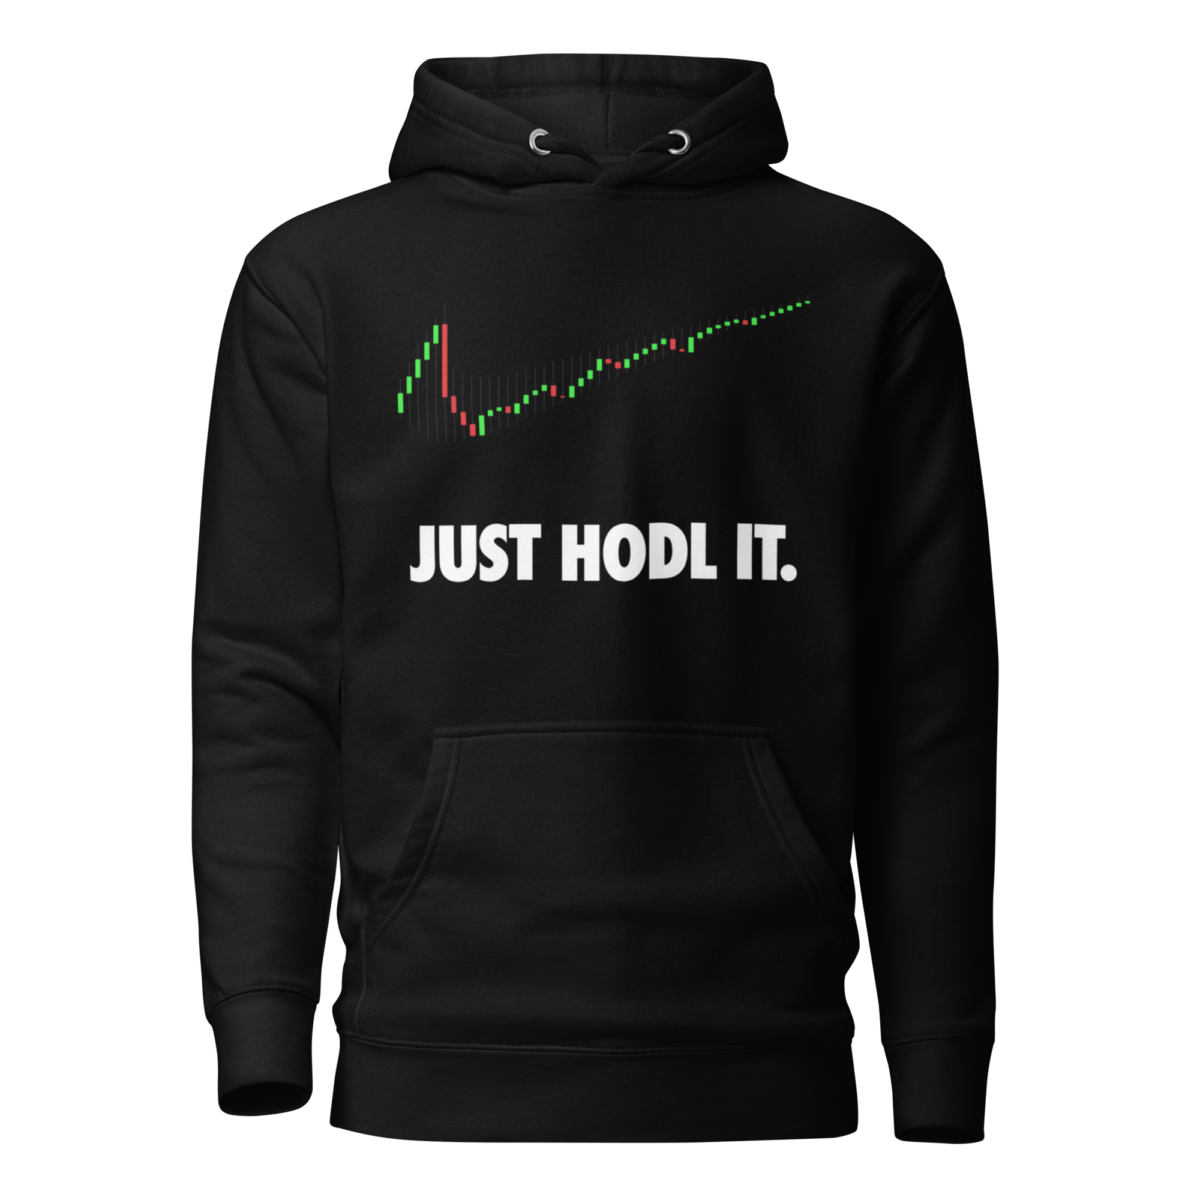 unisex premium hoodie black front 6391dff4575d4 - Just HODL It Hoodie